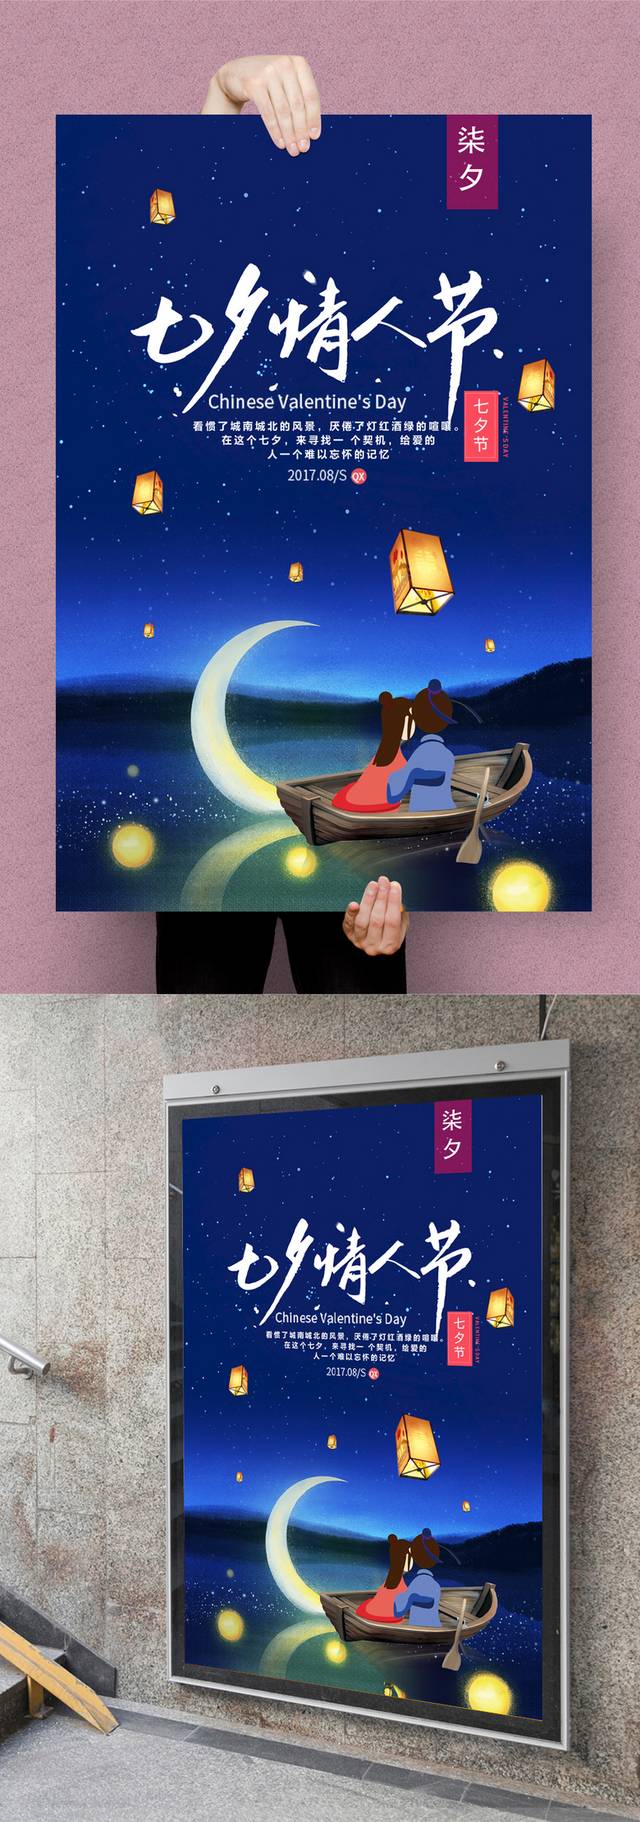 蓝色浪漫七夕节海报宣传